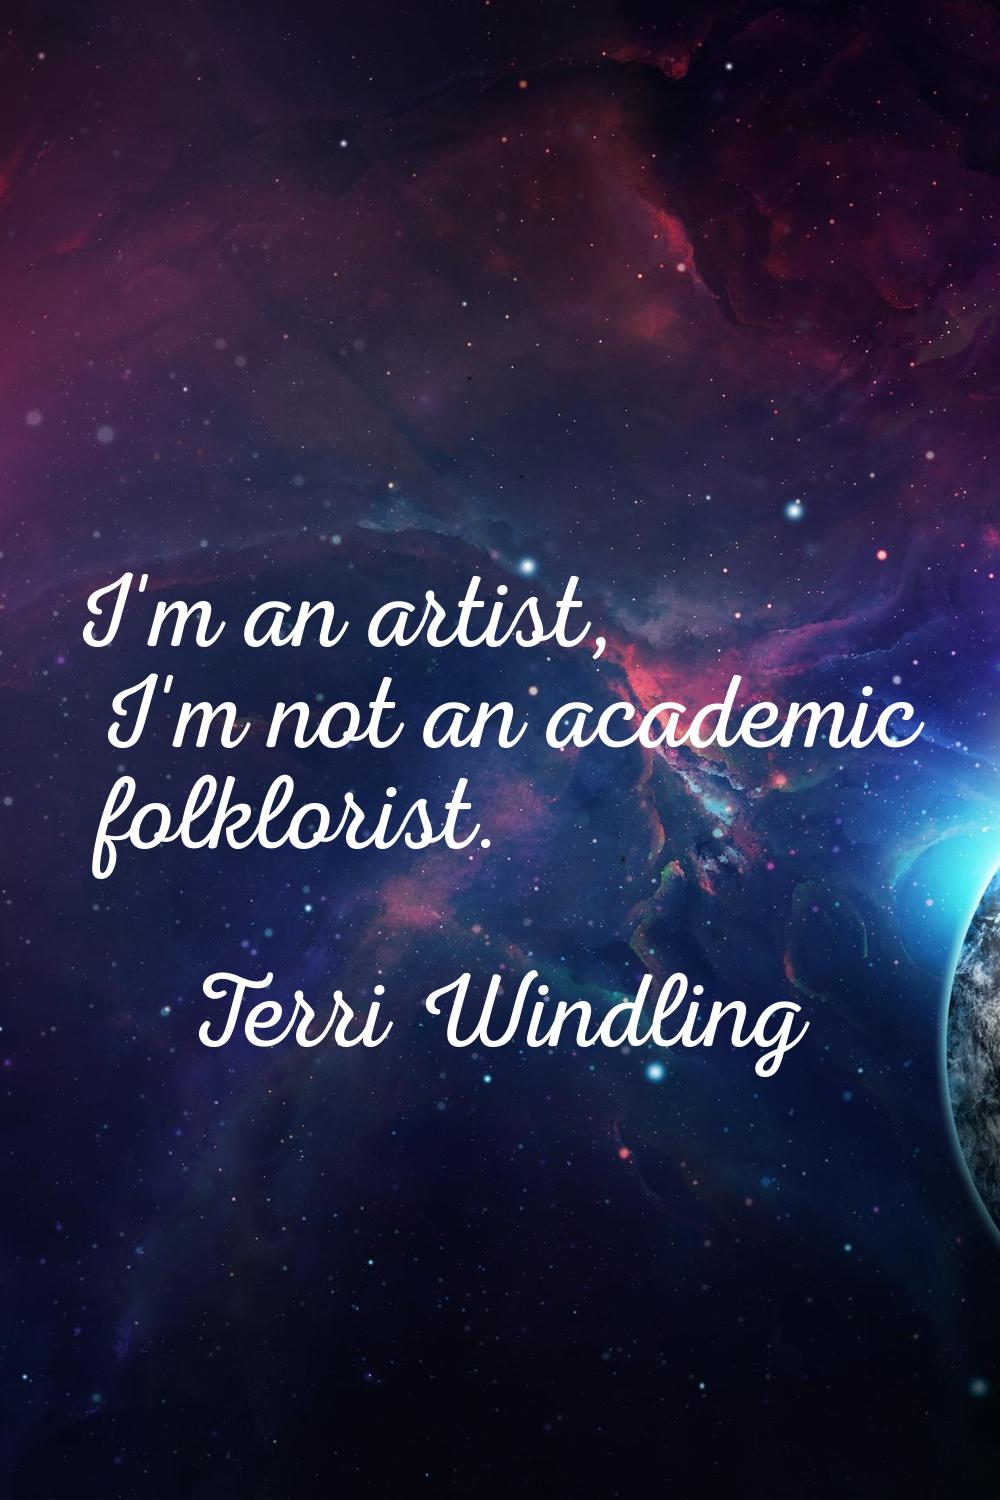 I'm an artist, I'm not an academic folklorist.